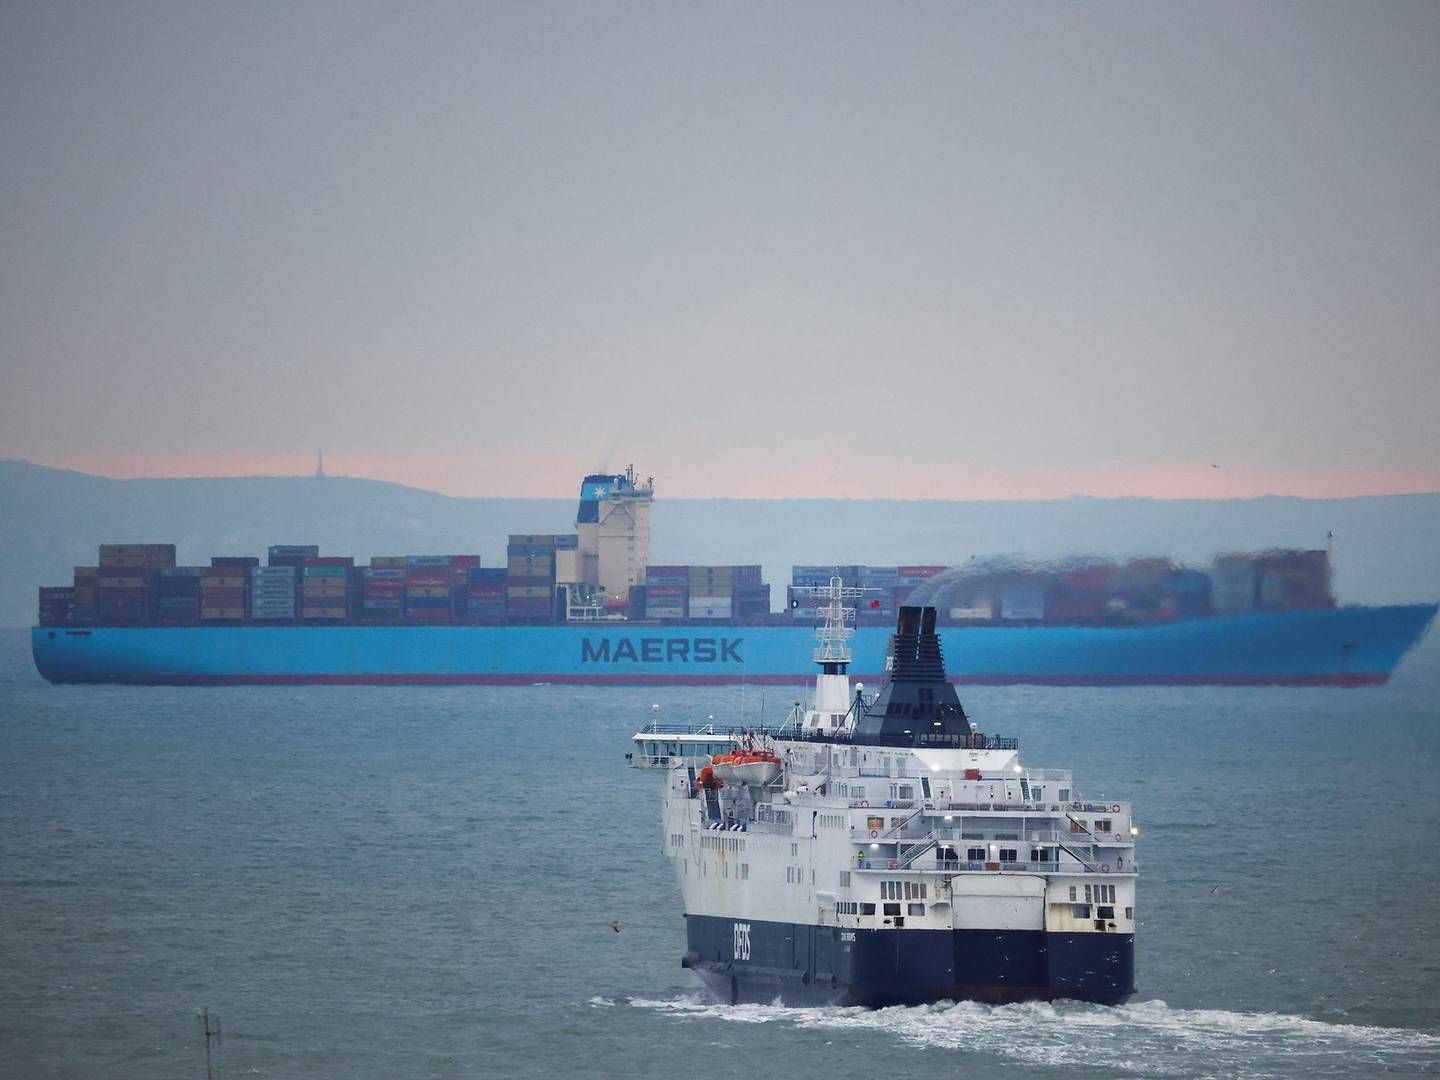 Søtransport har bidraget til den danske eksport. | Foto: John Sibley/Reuters/Ritzau Scanpix